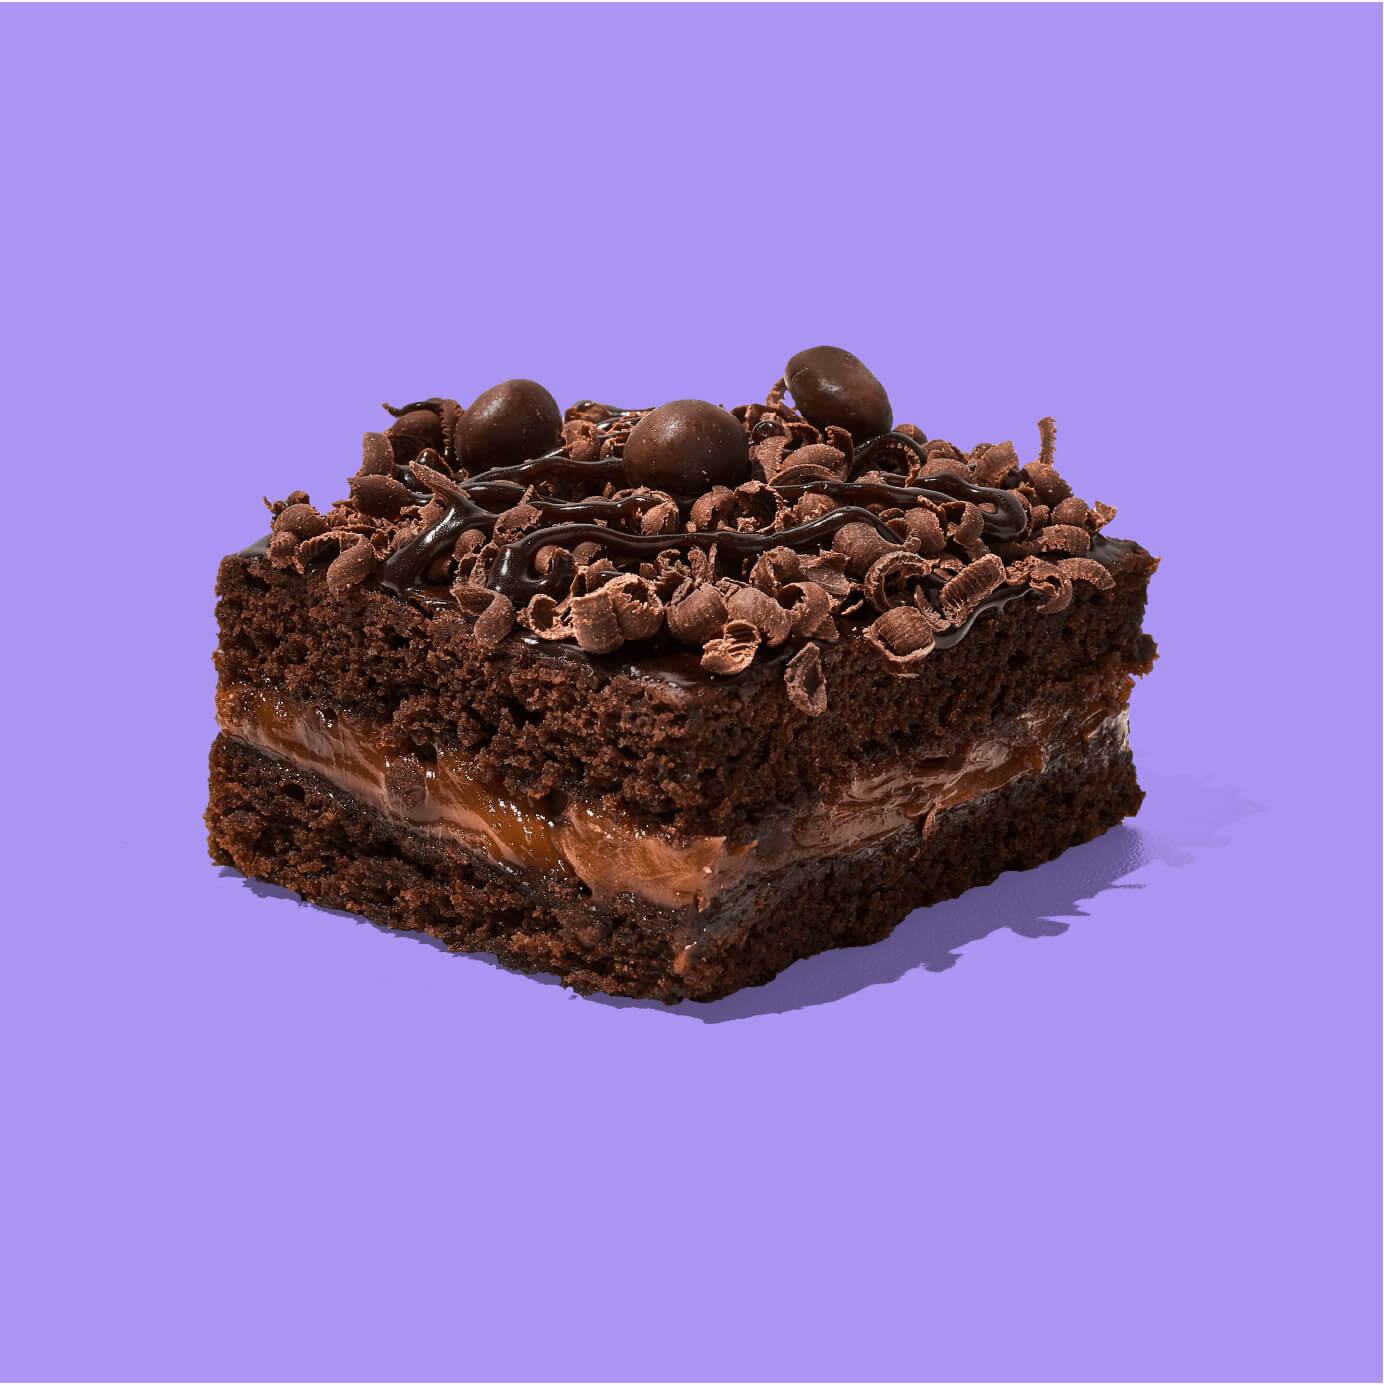 ¡Un Brownie para los amantes del chocolate! Brownie de chocolate con relleno de manjar y cobertura de chocolate en rulos, fudge y chocolate M&amp;amp;M.

Medida de Producto: 6.5 cm de ancho, 6.5 cm de largo, 3.5 cm de altura

 
